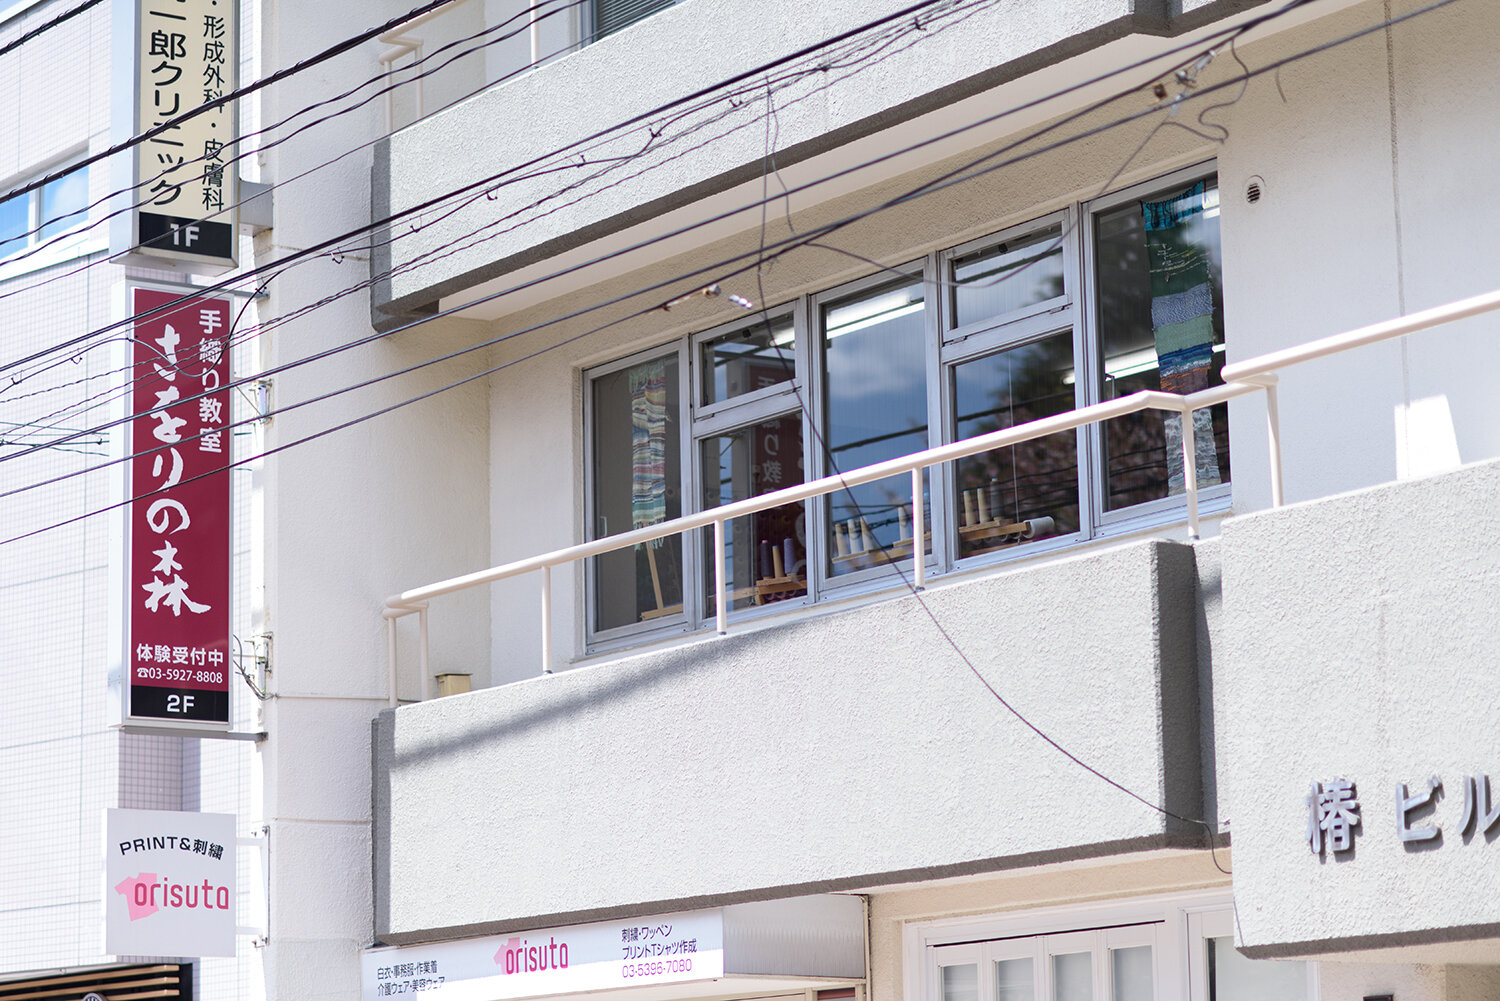 4.1_saorinomori tokyo-exterior.jpg